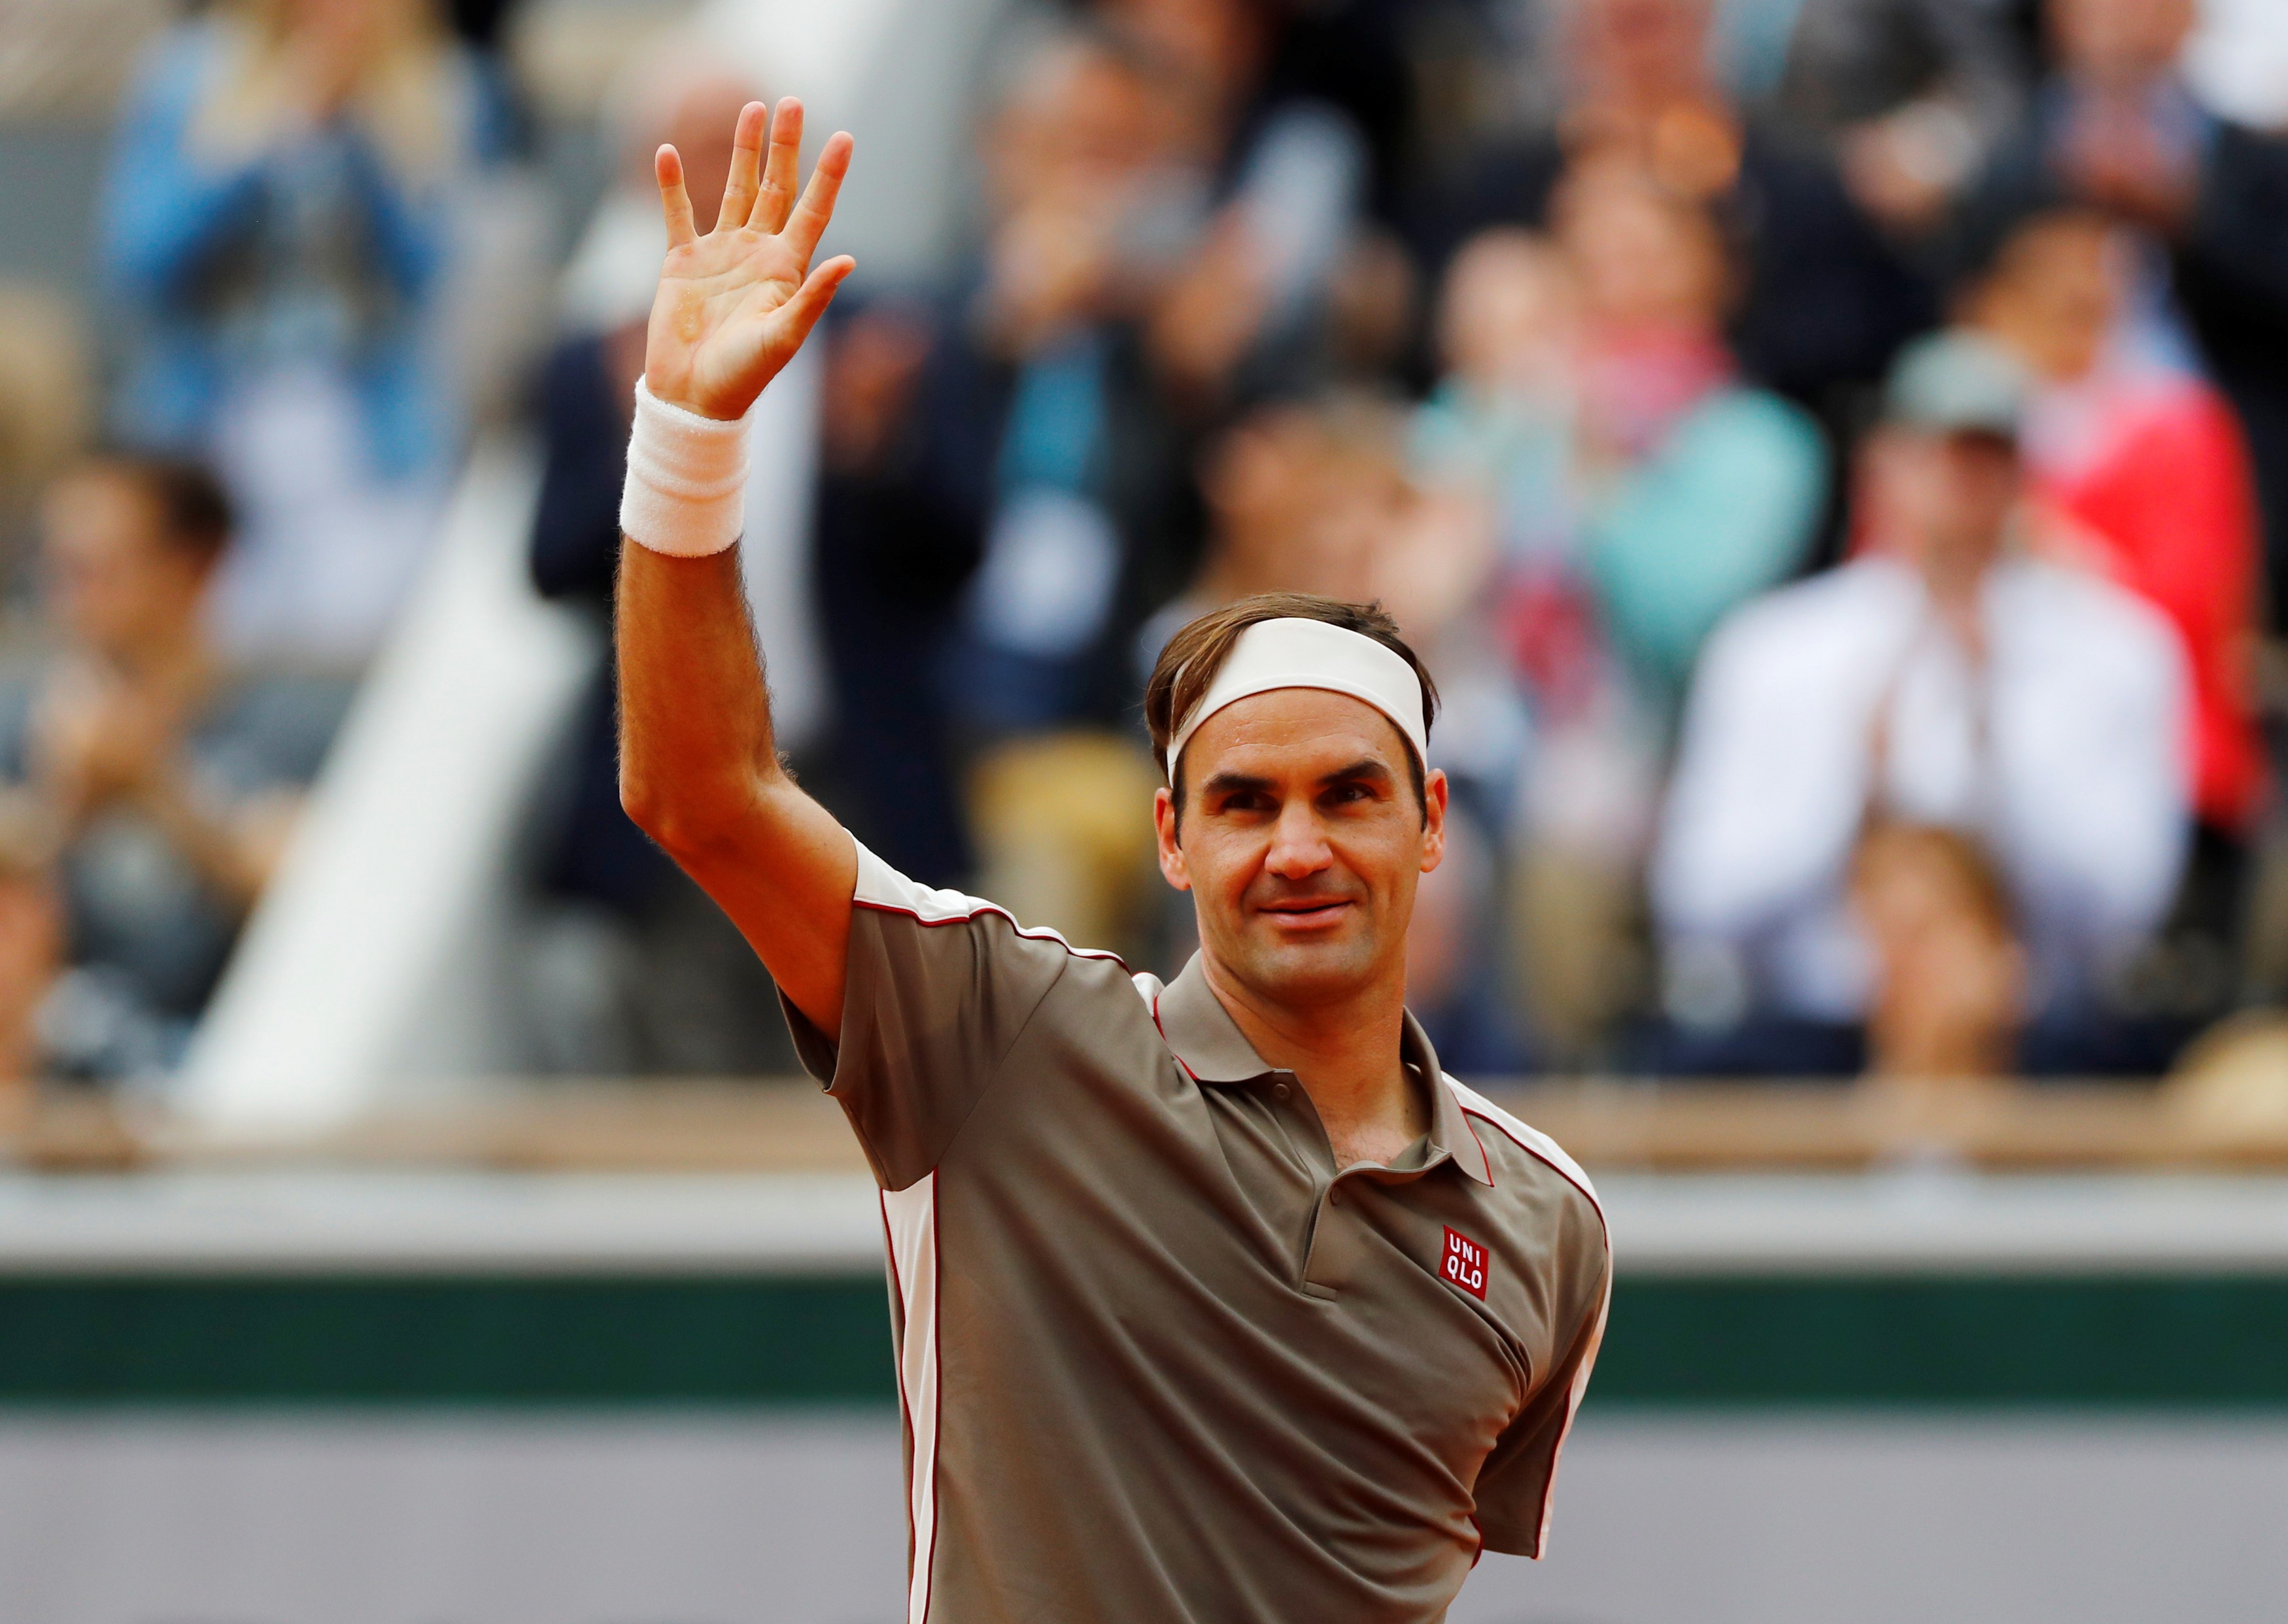 Roger Federer retirement soon